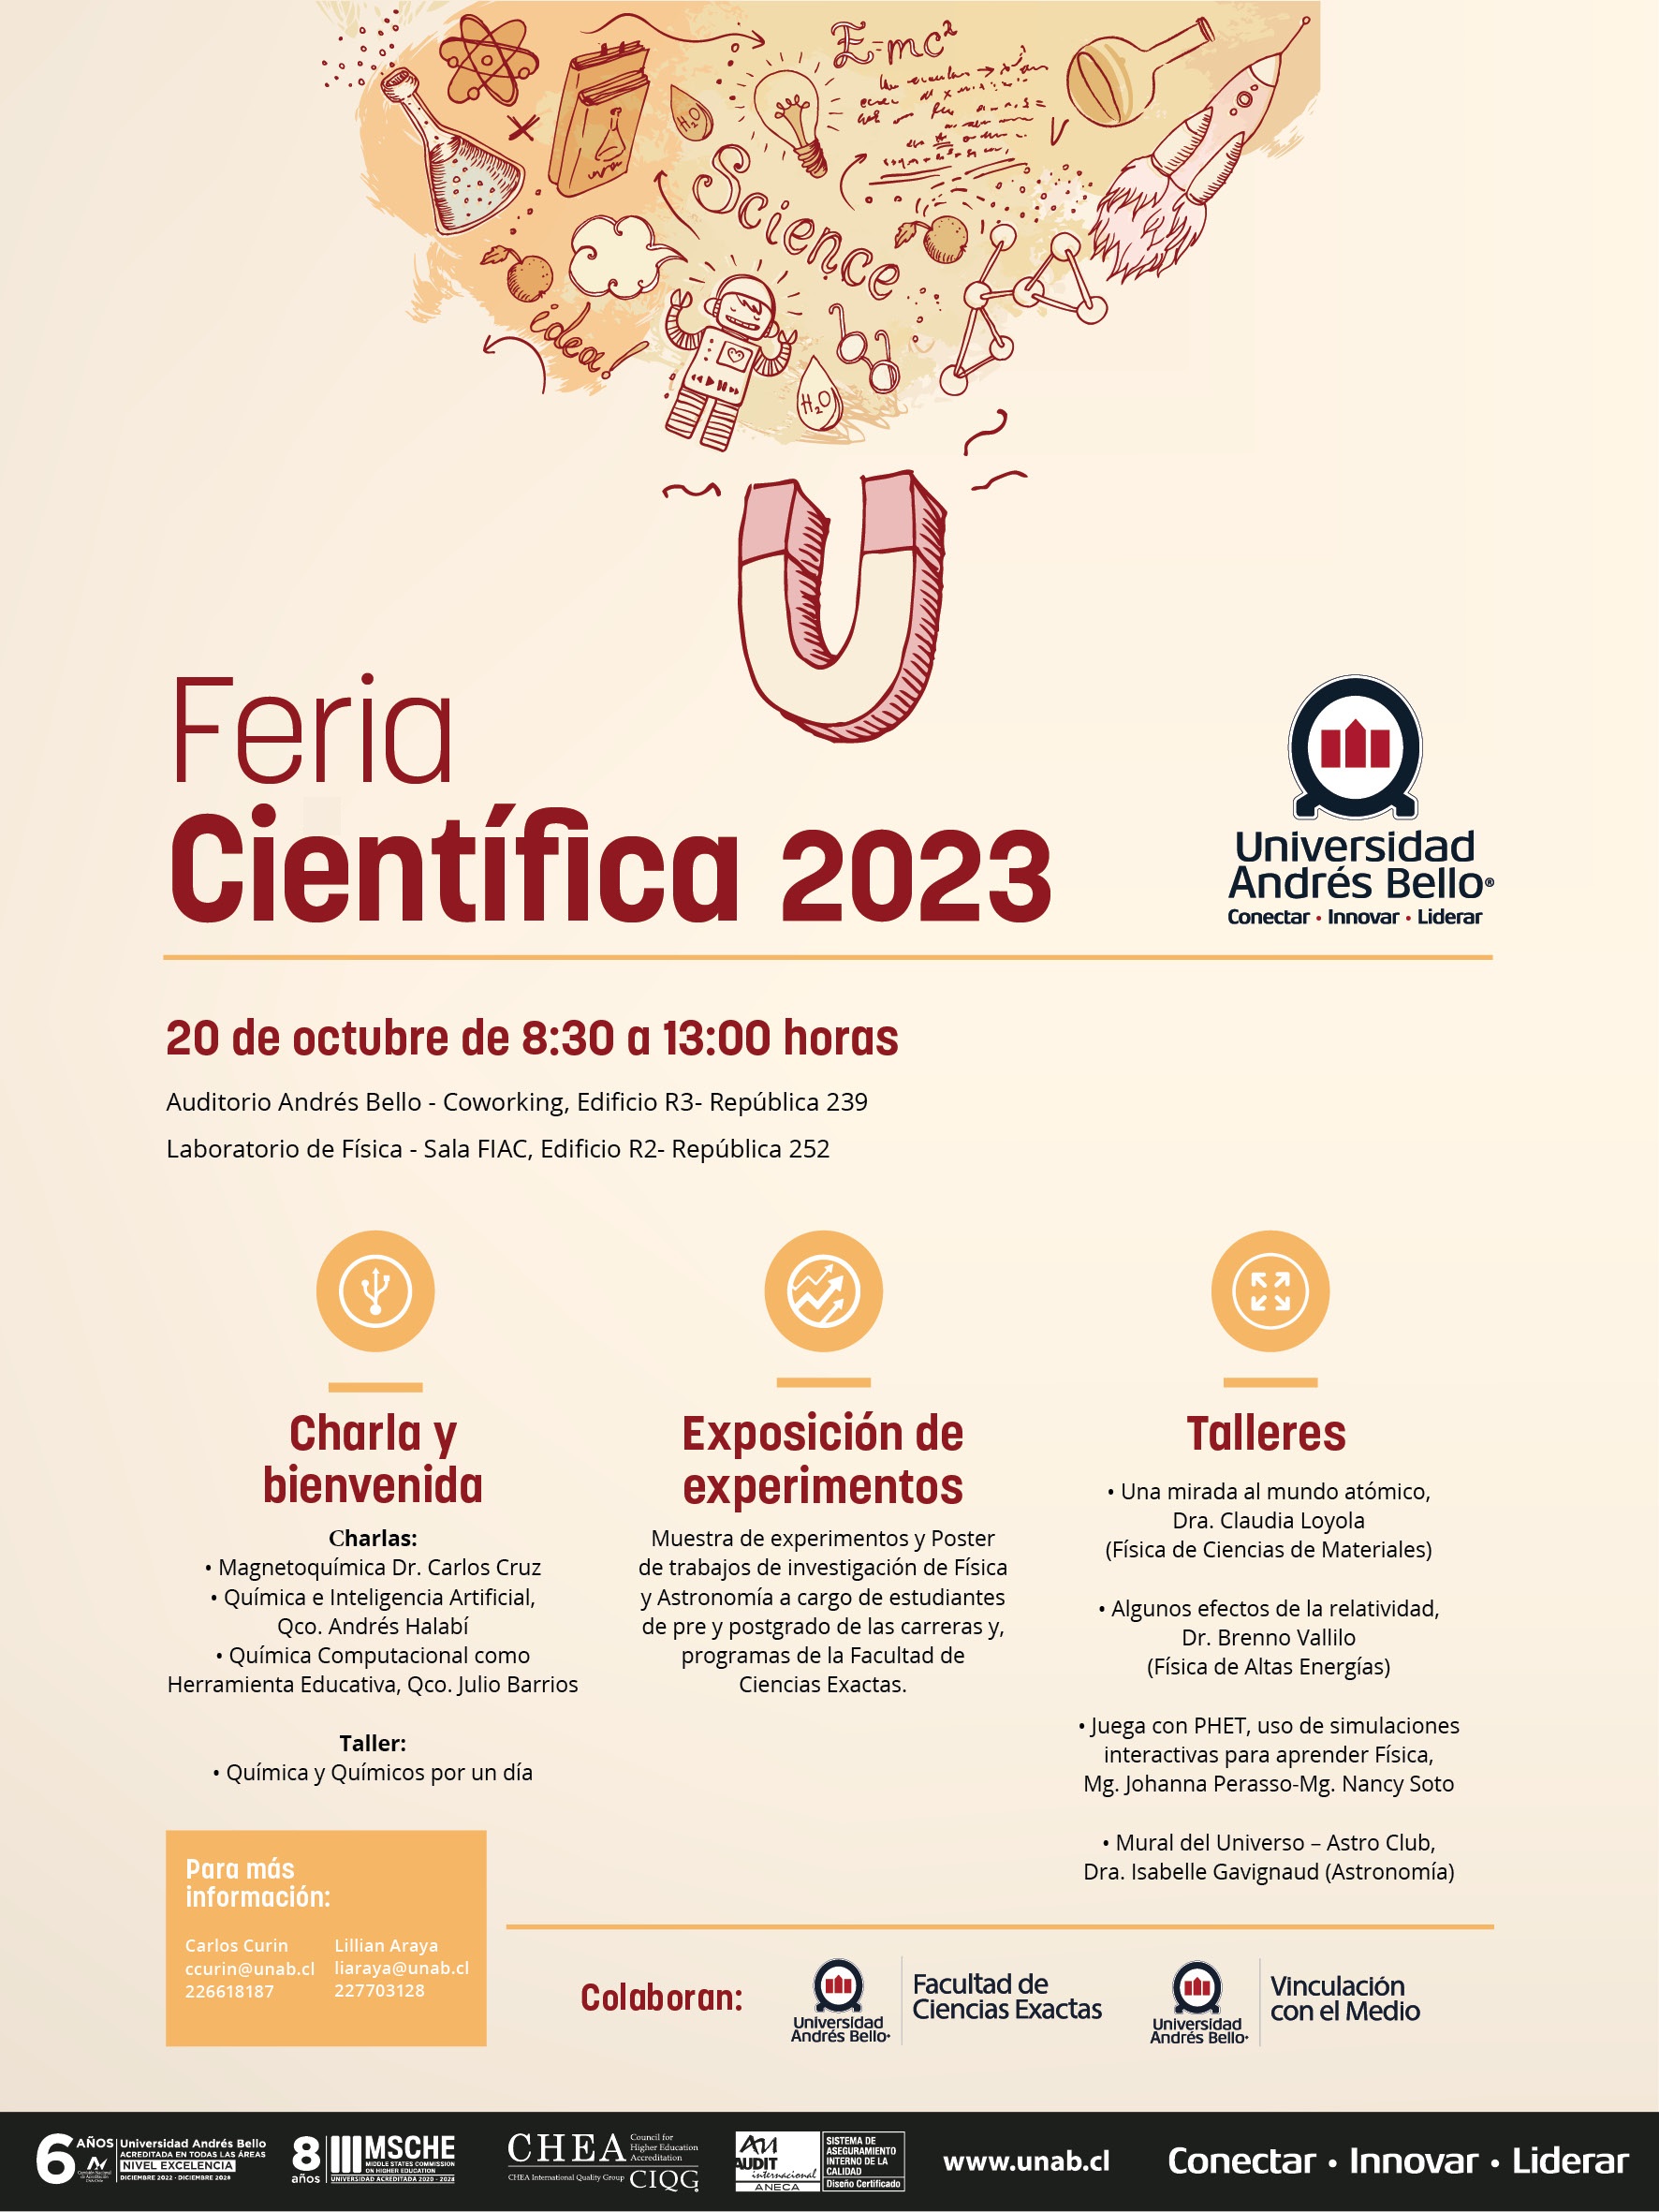 Feria cientifica 2023